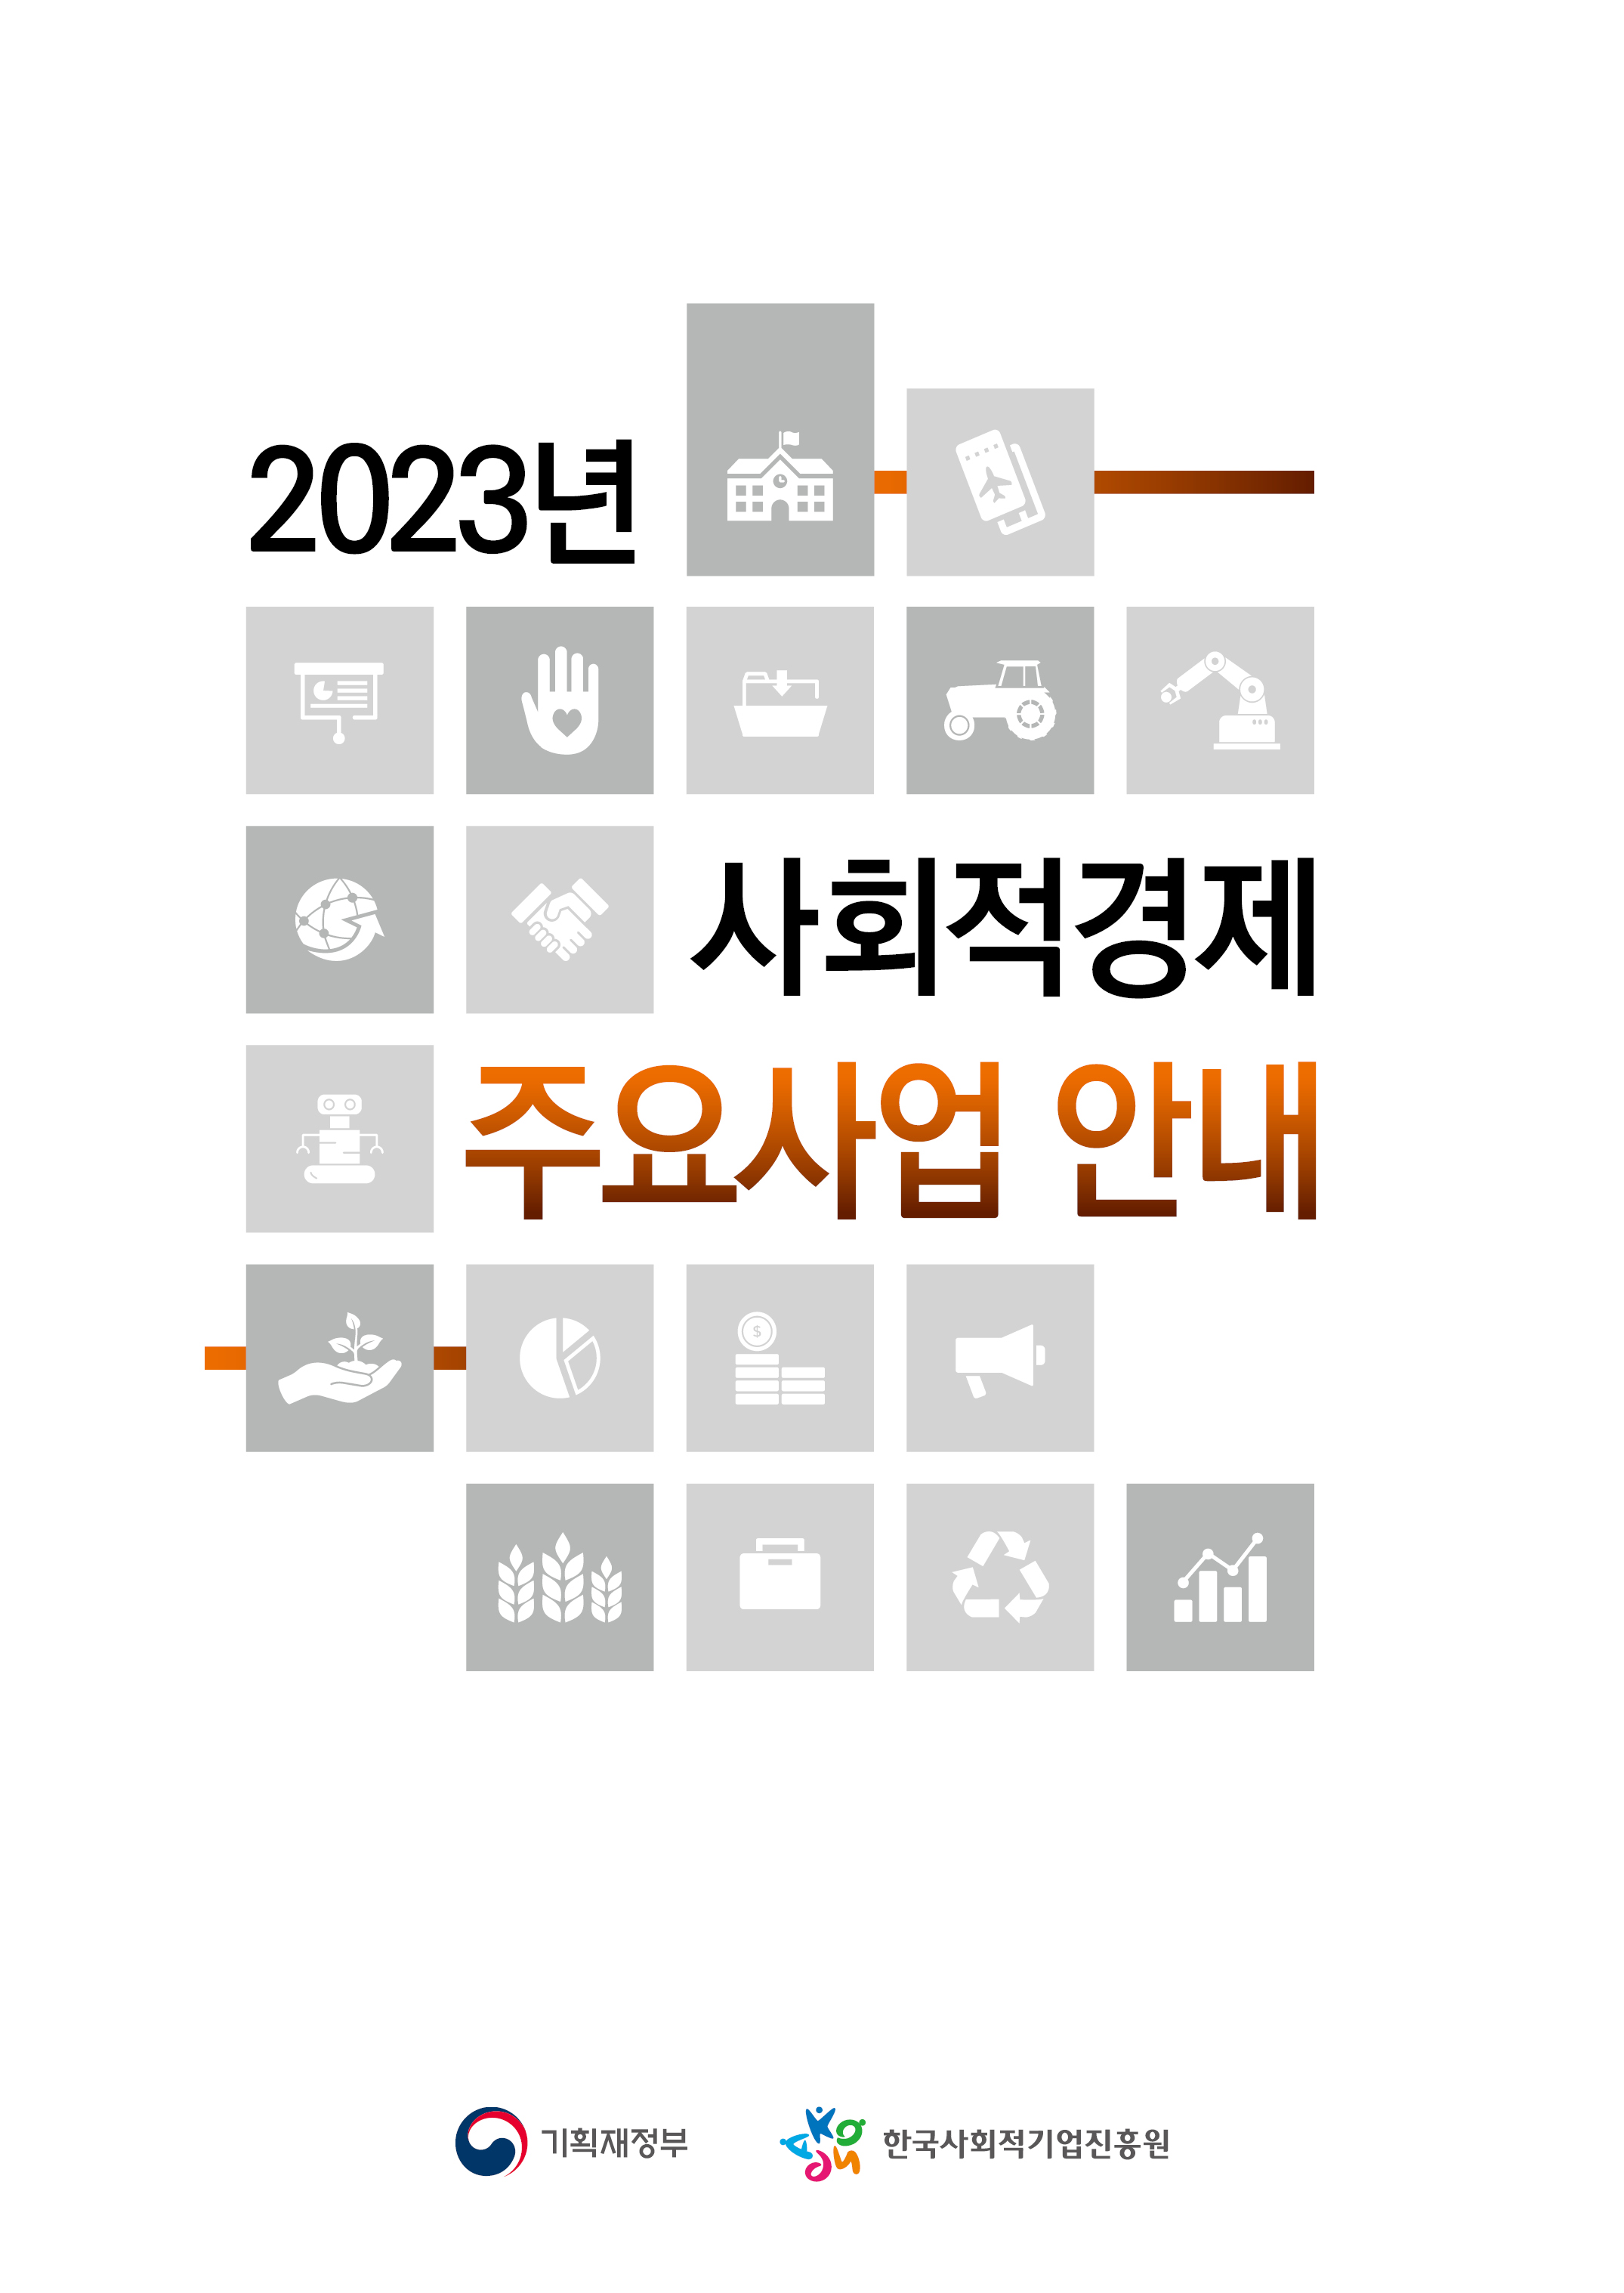 2023년 사회적경제 주요사업안내